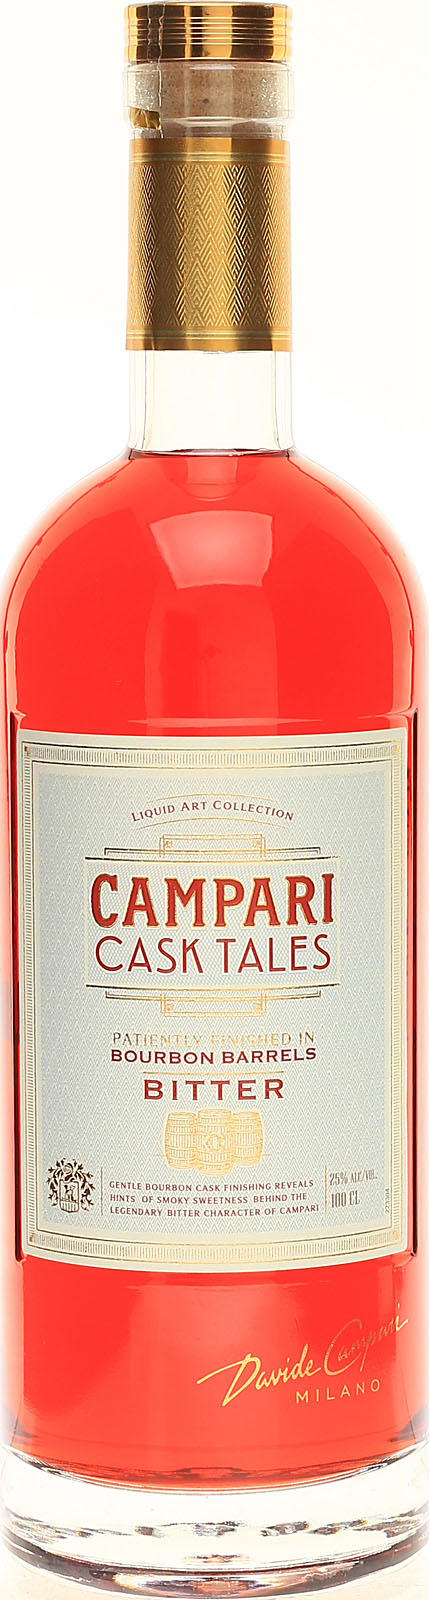 Campari Cask Tales 1,0 Liter 25 %